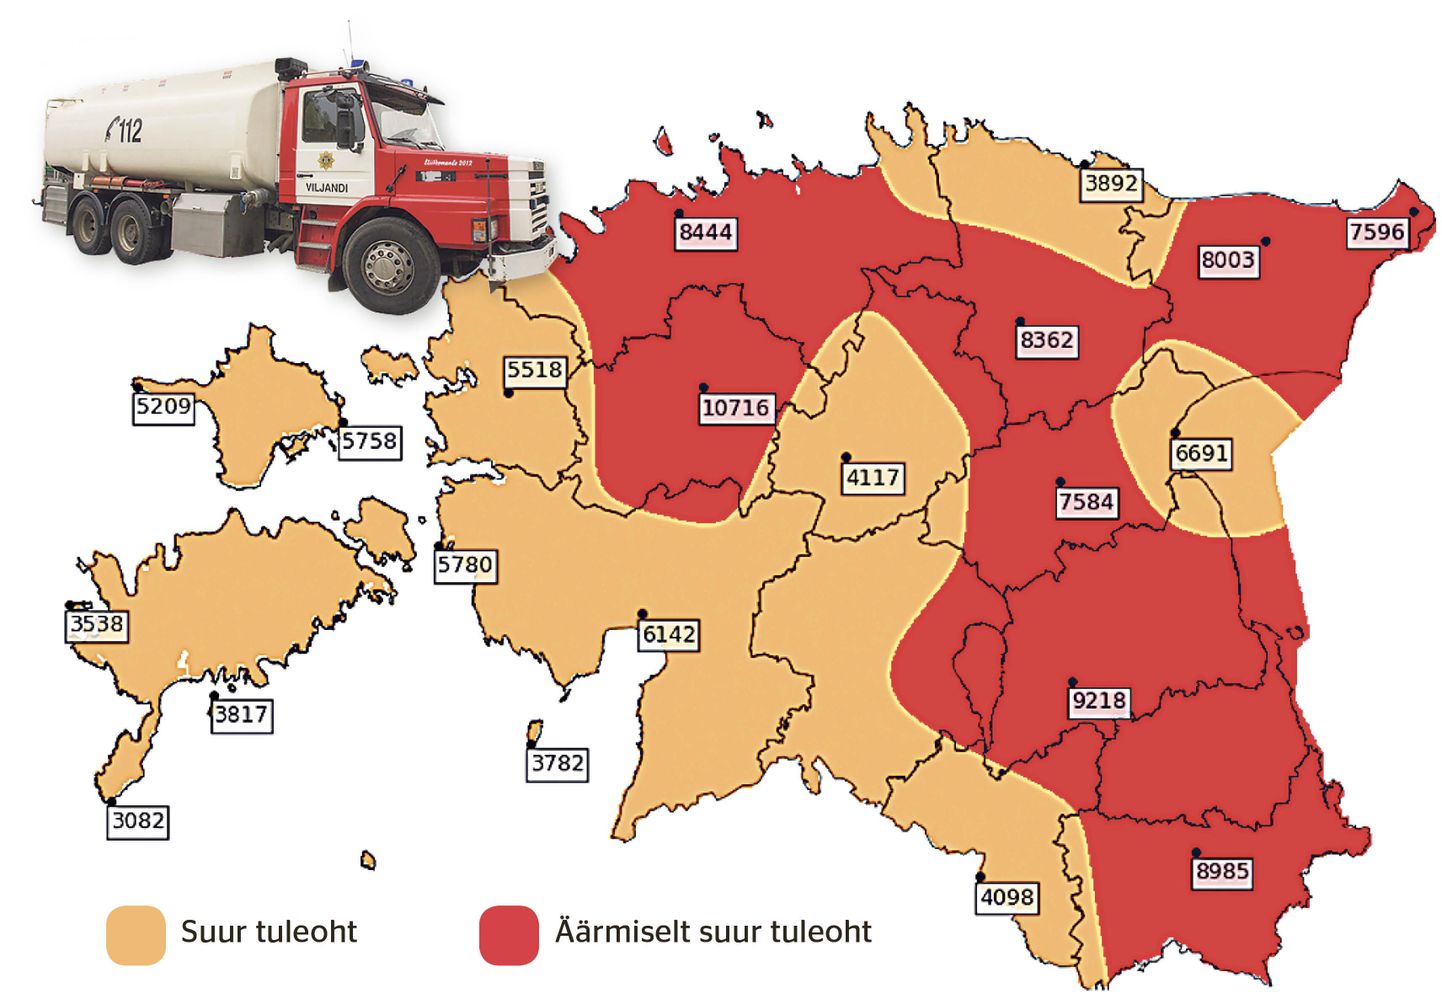 Riigi ilmateenistuse tuleohukaart näitab, et kõikjal Eesti metsades on väga suur tuleoht. Seepärast kuulutab päästeamet tänasest välja ohtliku aja.